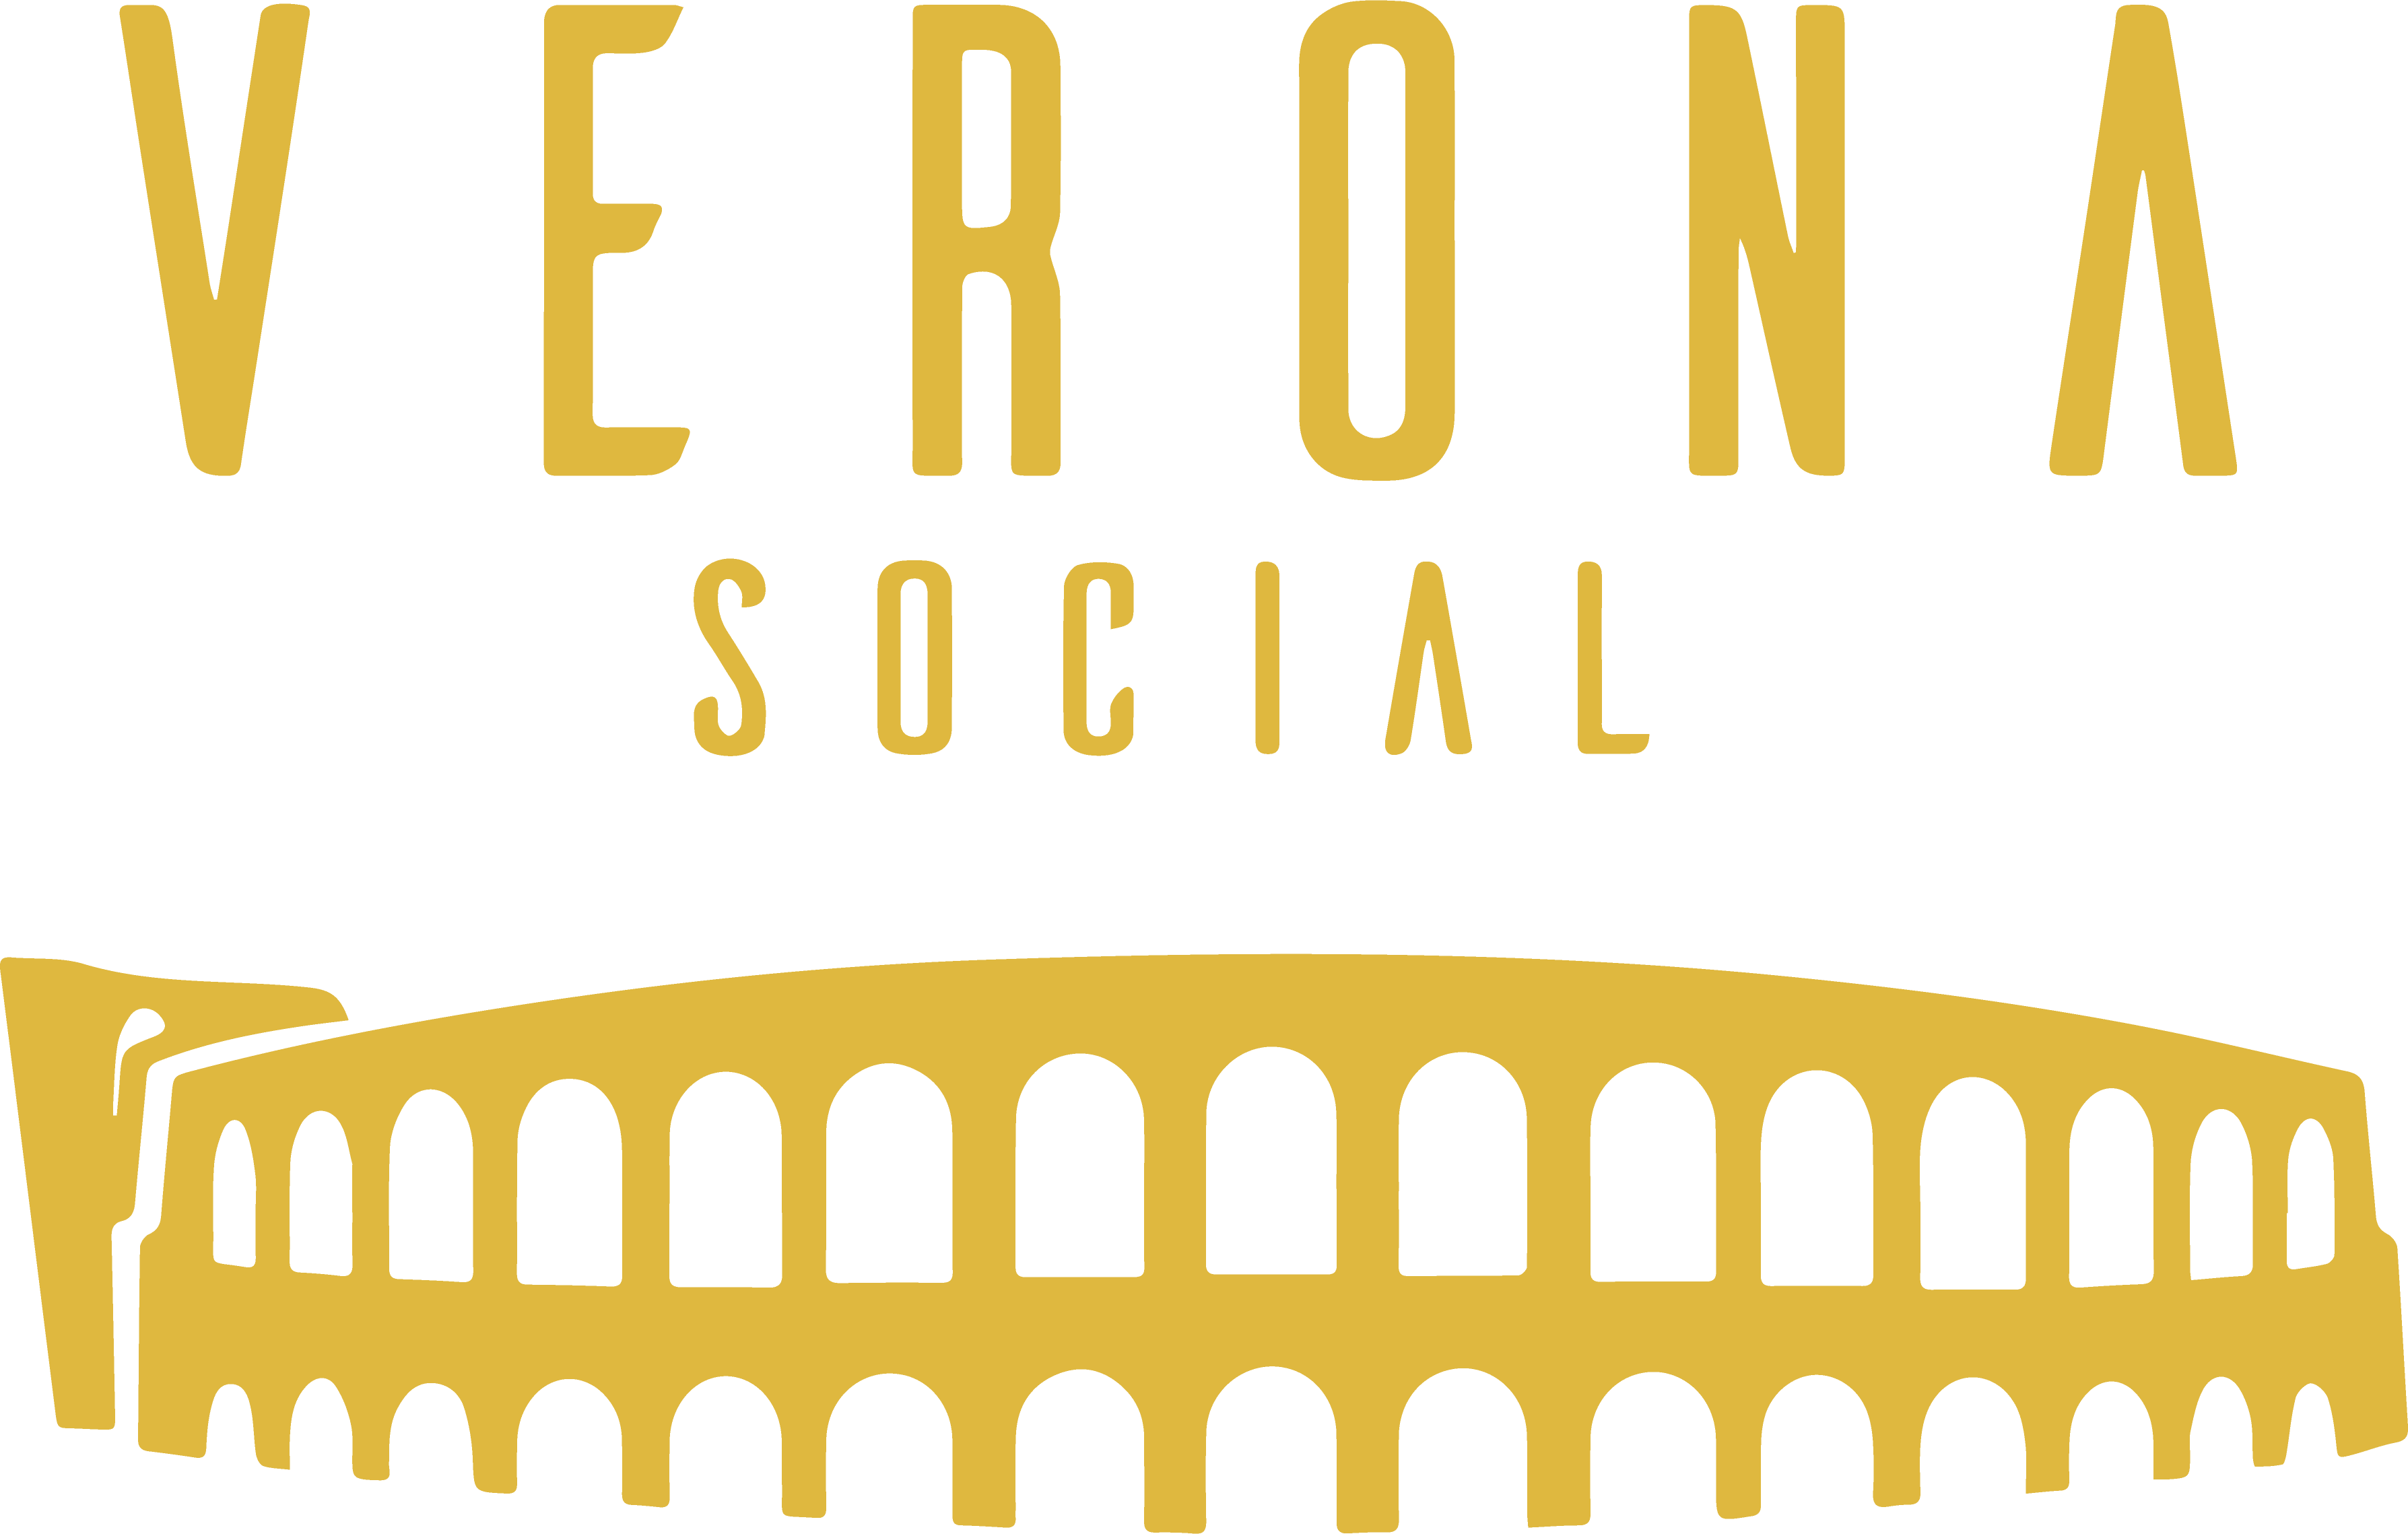 Verona Social